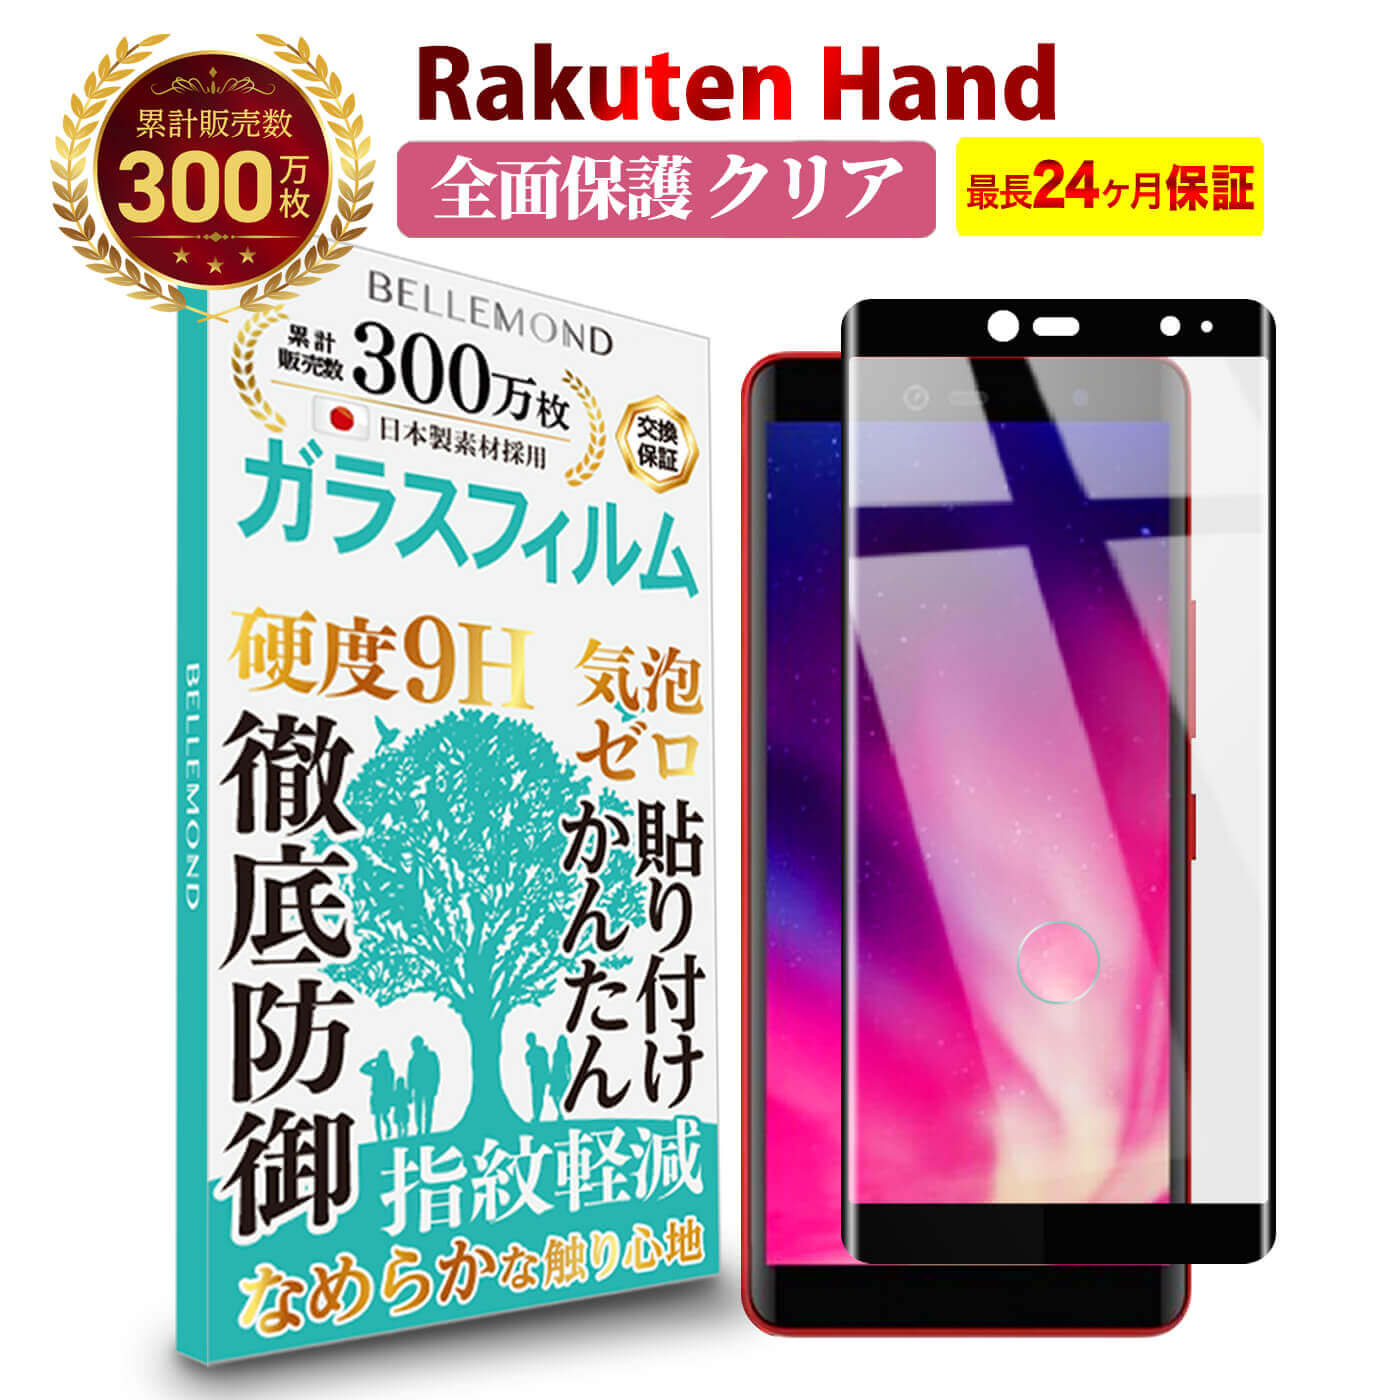 Rakuten HandRakuten Hand 5G 全面保護 ガラ